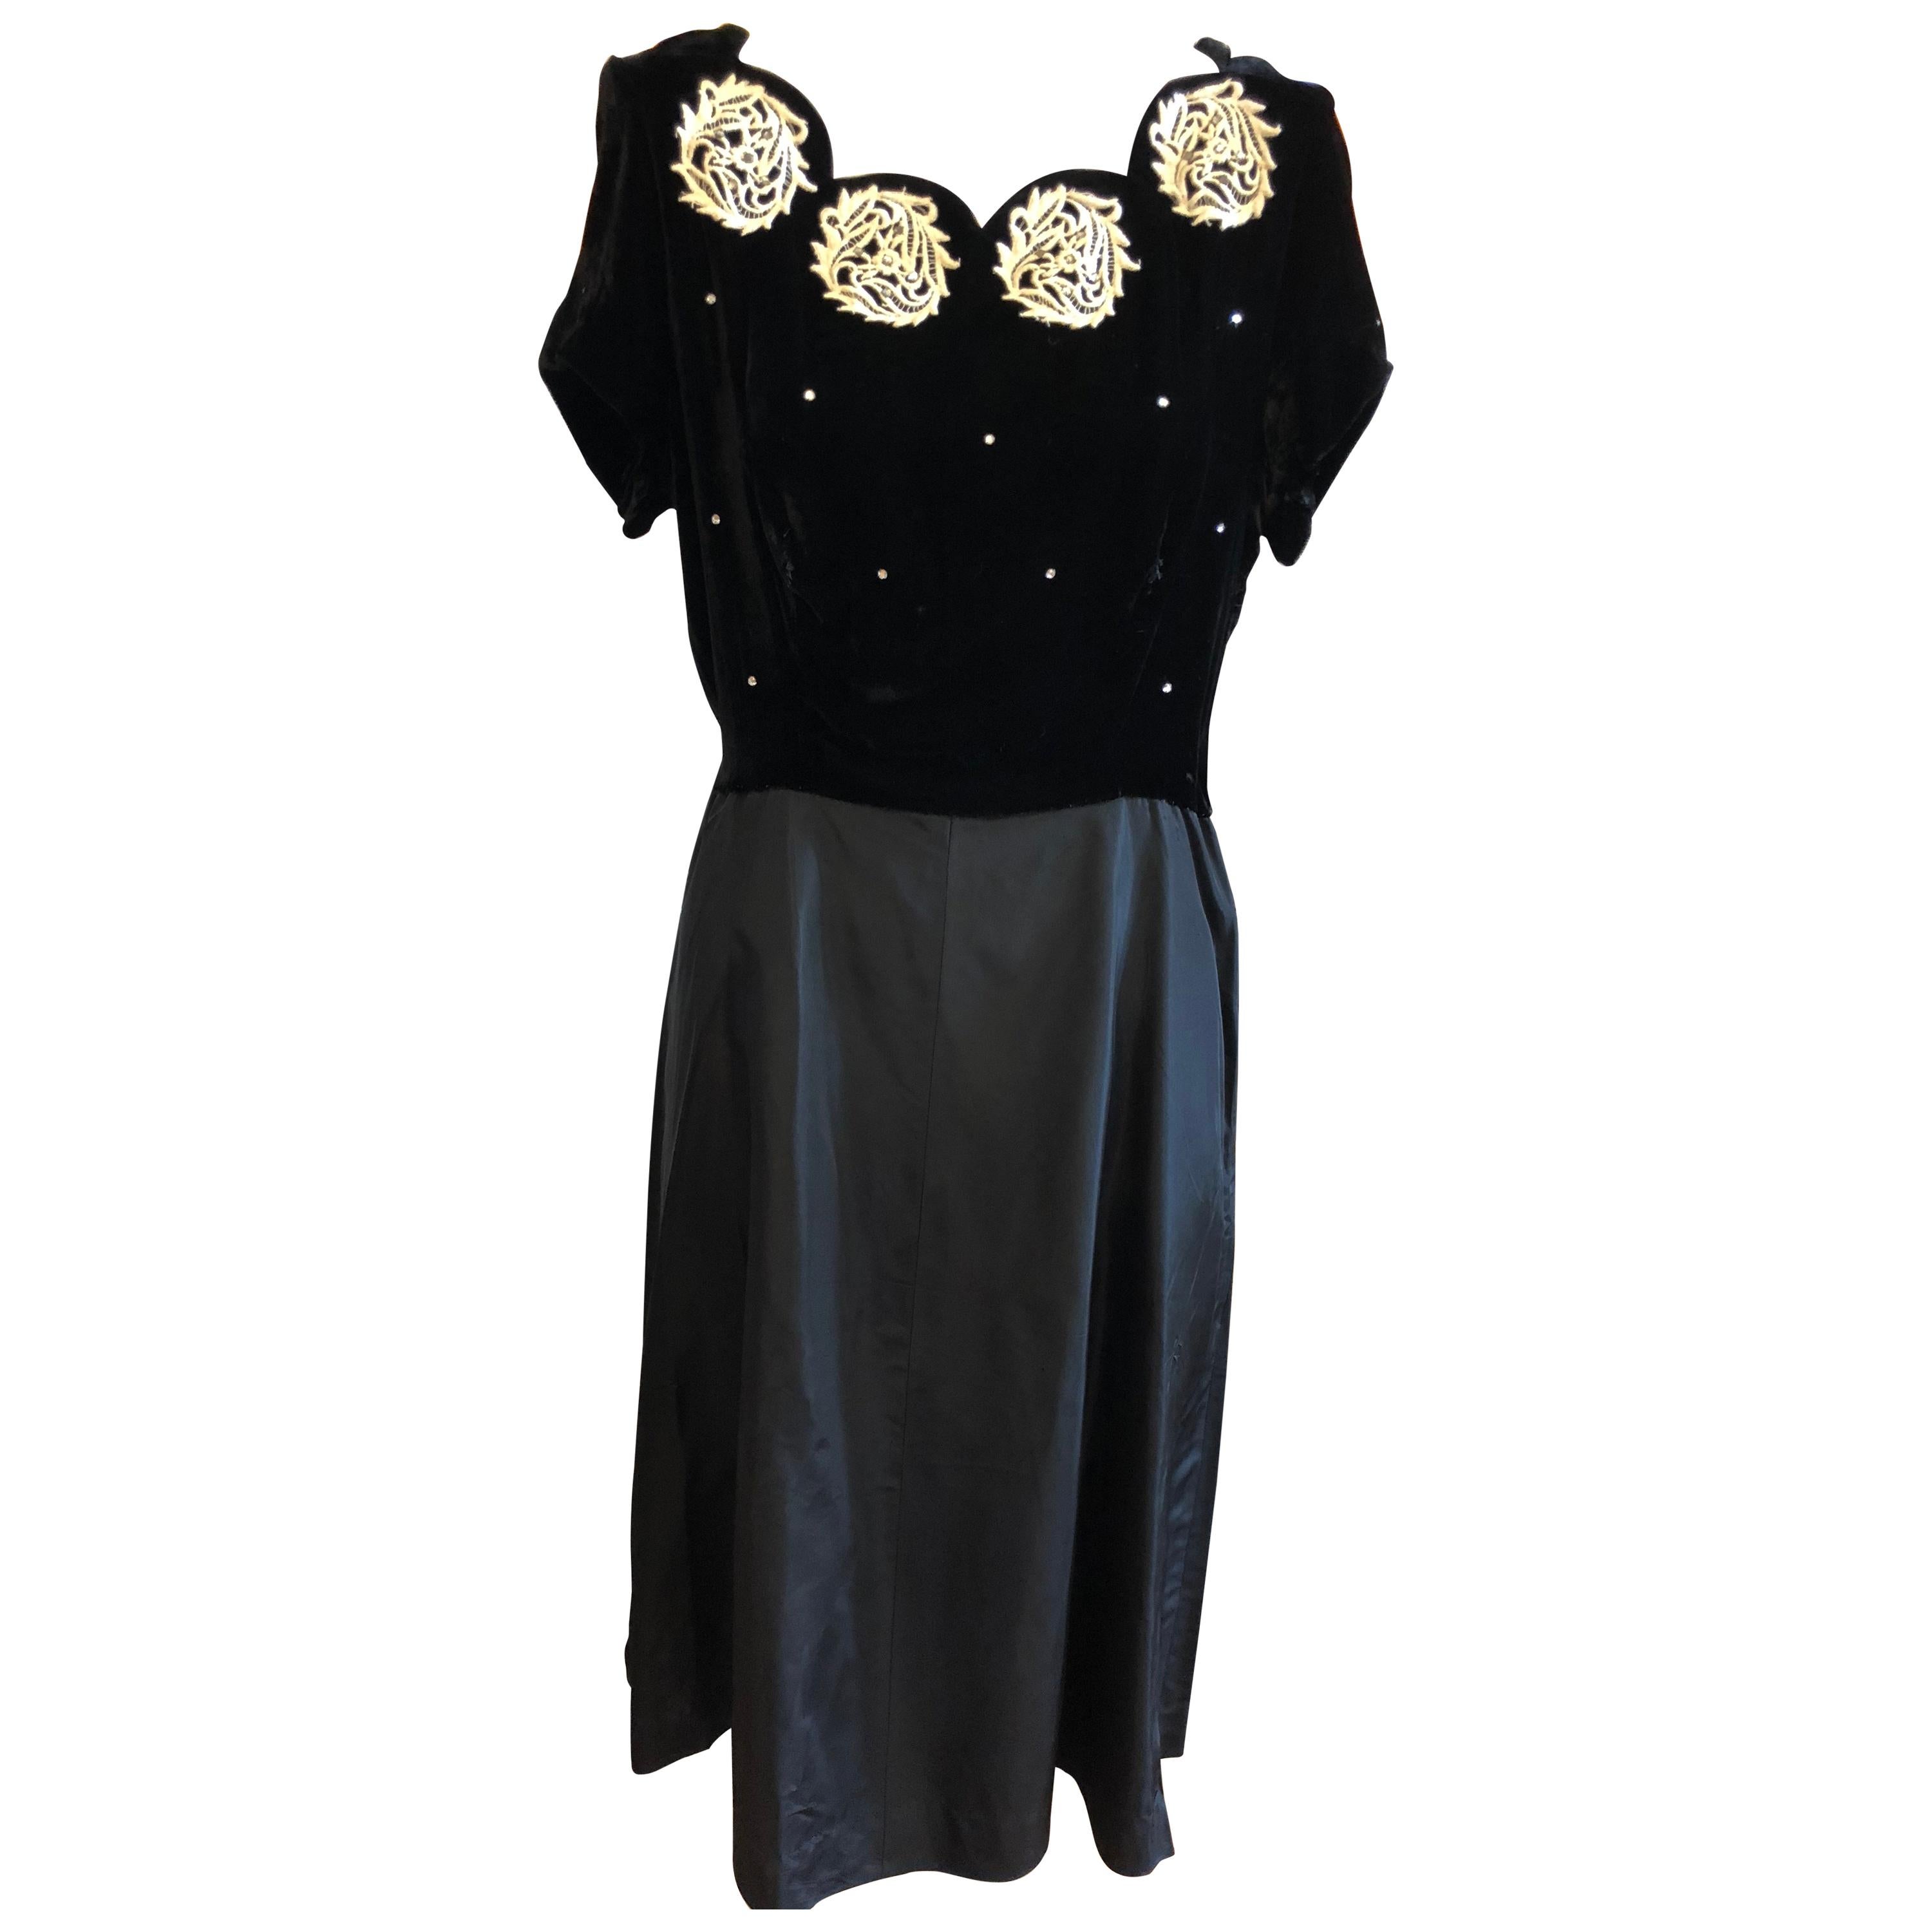 Velvet / Rayon Black Embellished Dress 1940s 